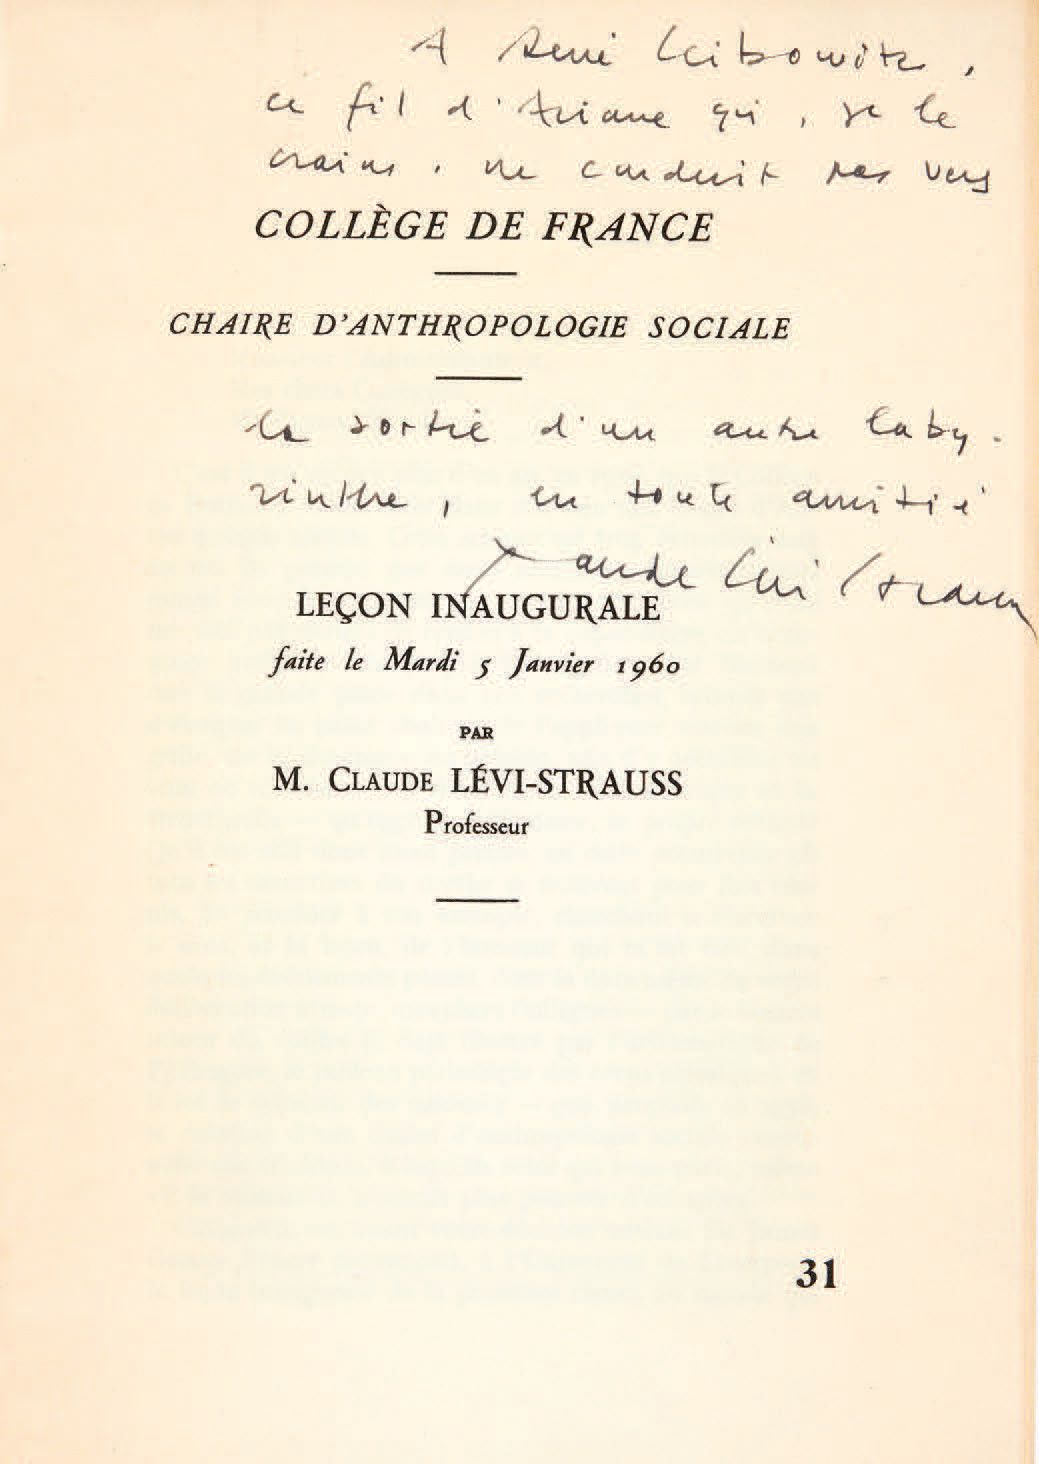 LÉVI-STRAUSS, Claude. 法兰西学院。社会人类学主席。1960年1月5日星期二的就职演讲，
。[巴黎，法兰西学院，1960]。
In-8 [2&hellip;